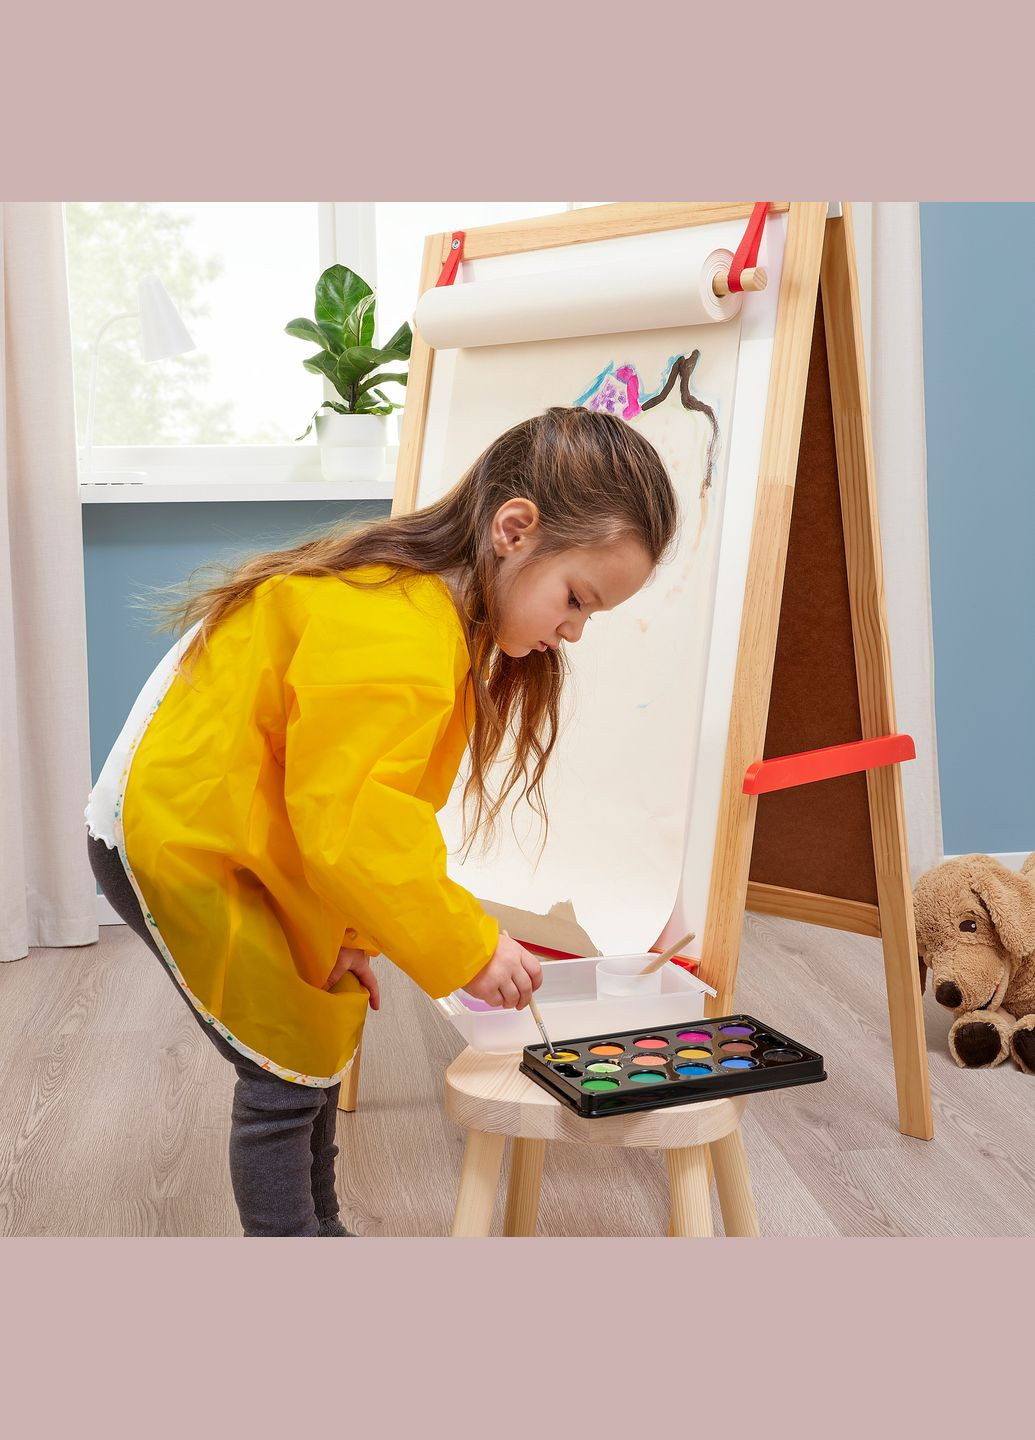 Фартук детский с длинными рукавами желтый IKEA (272150602)